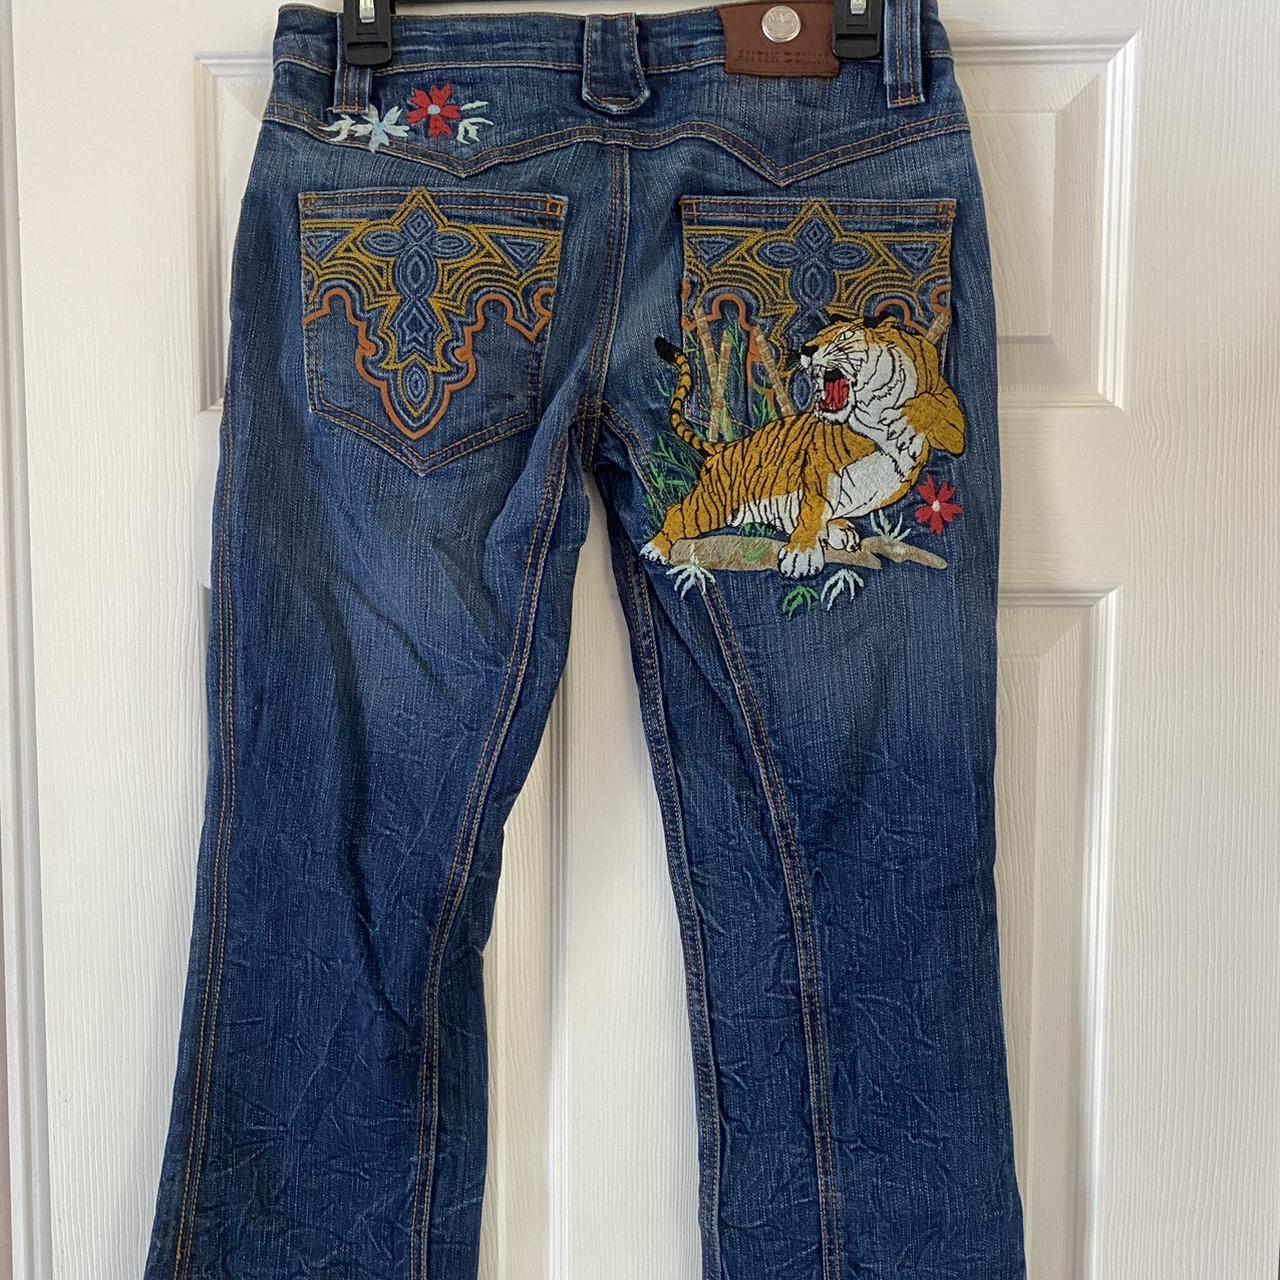 Vintage low rise Antik denim embroidered jeans. Size... - Depop